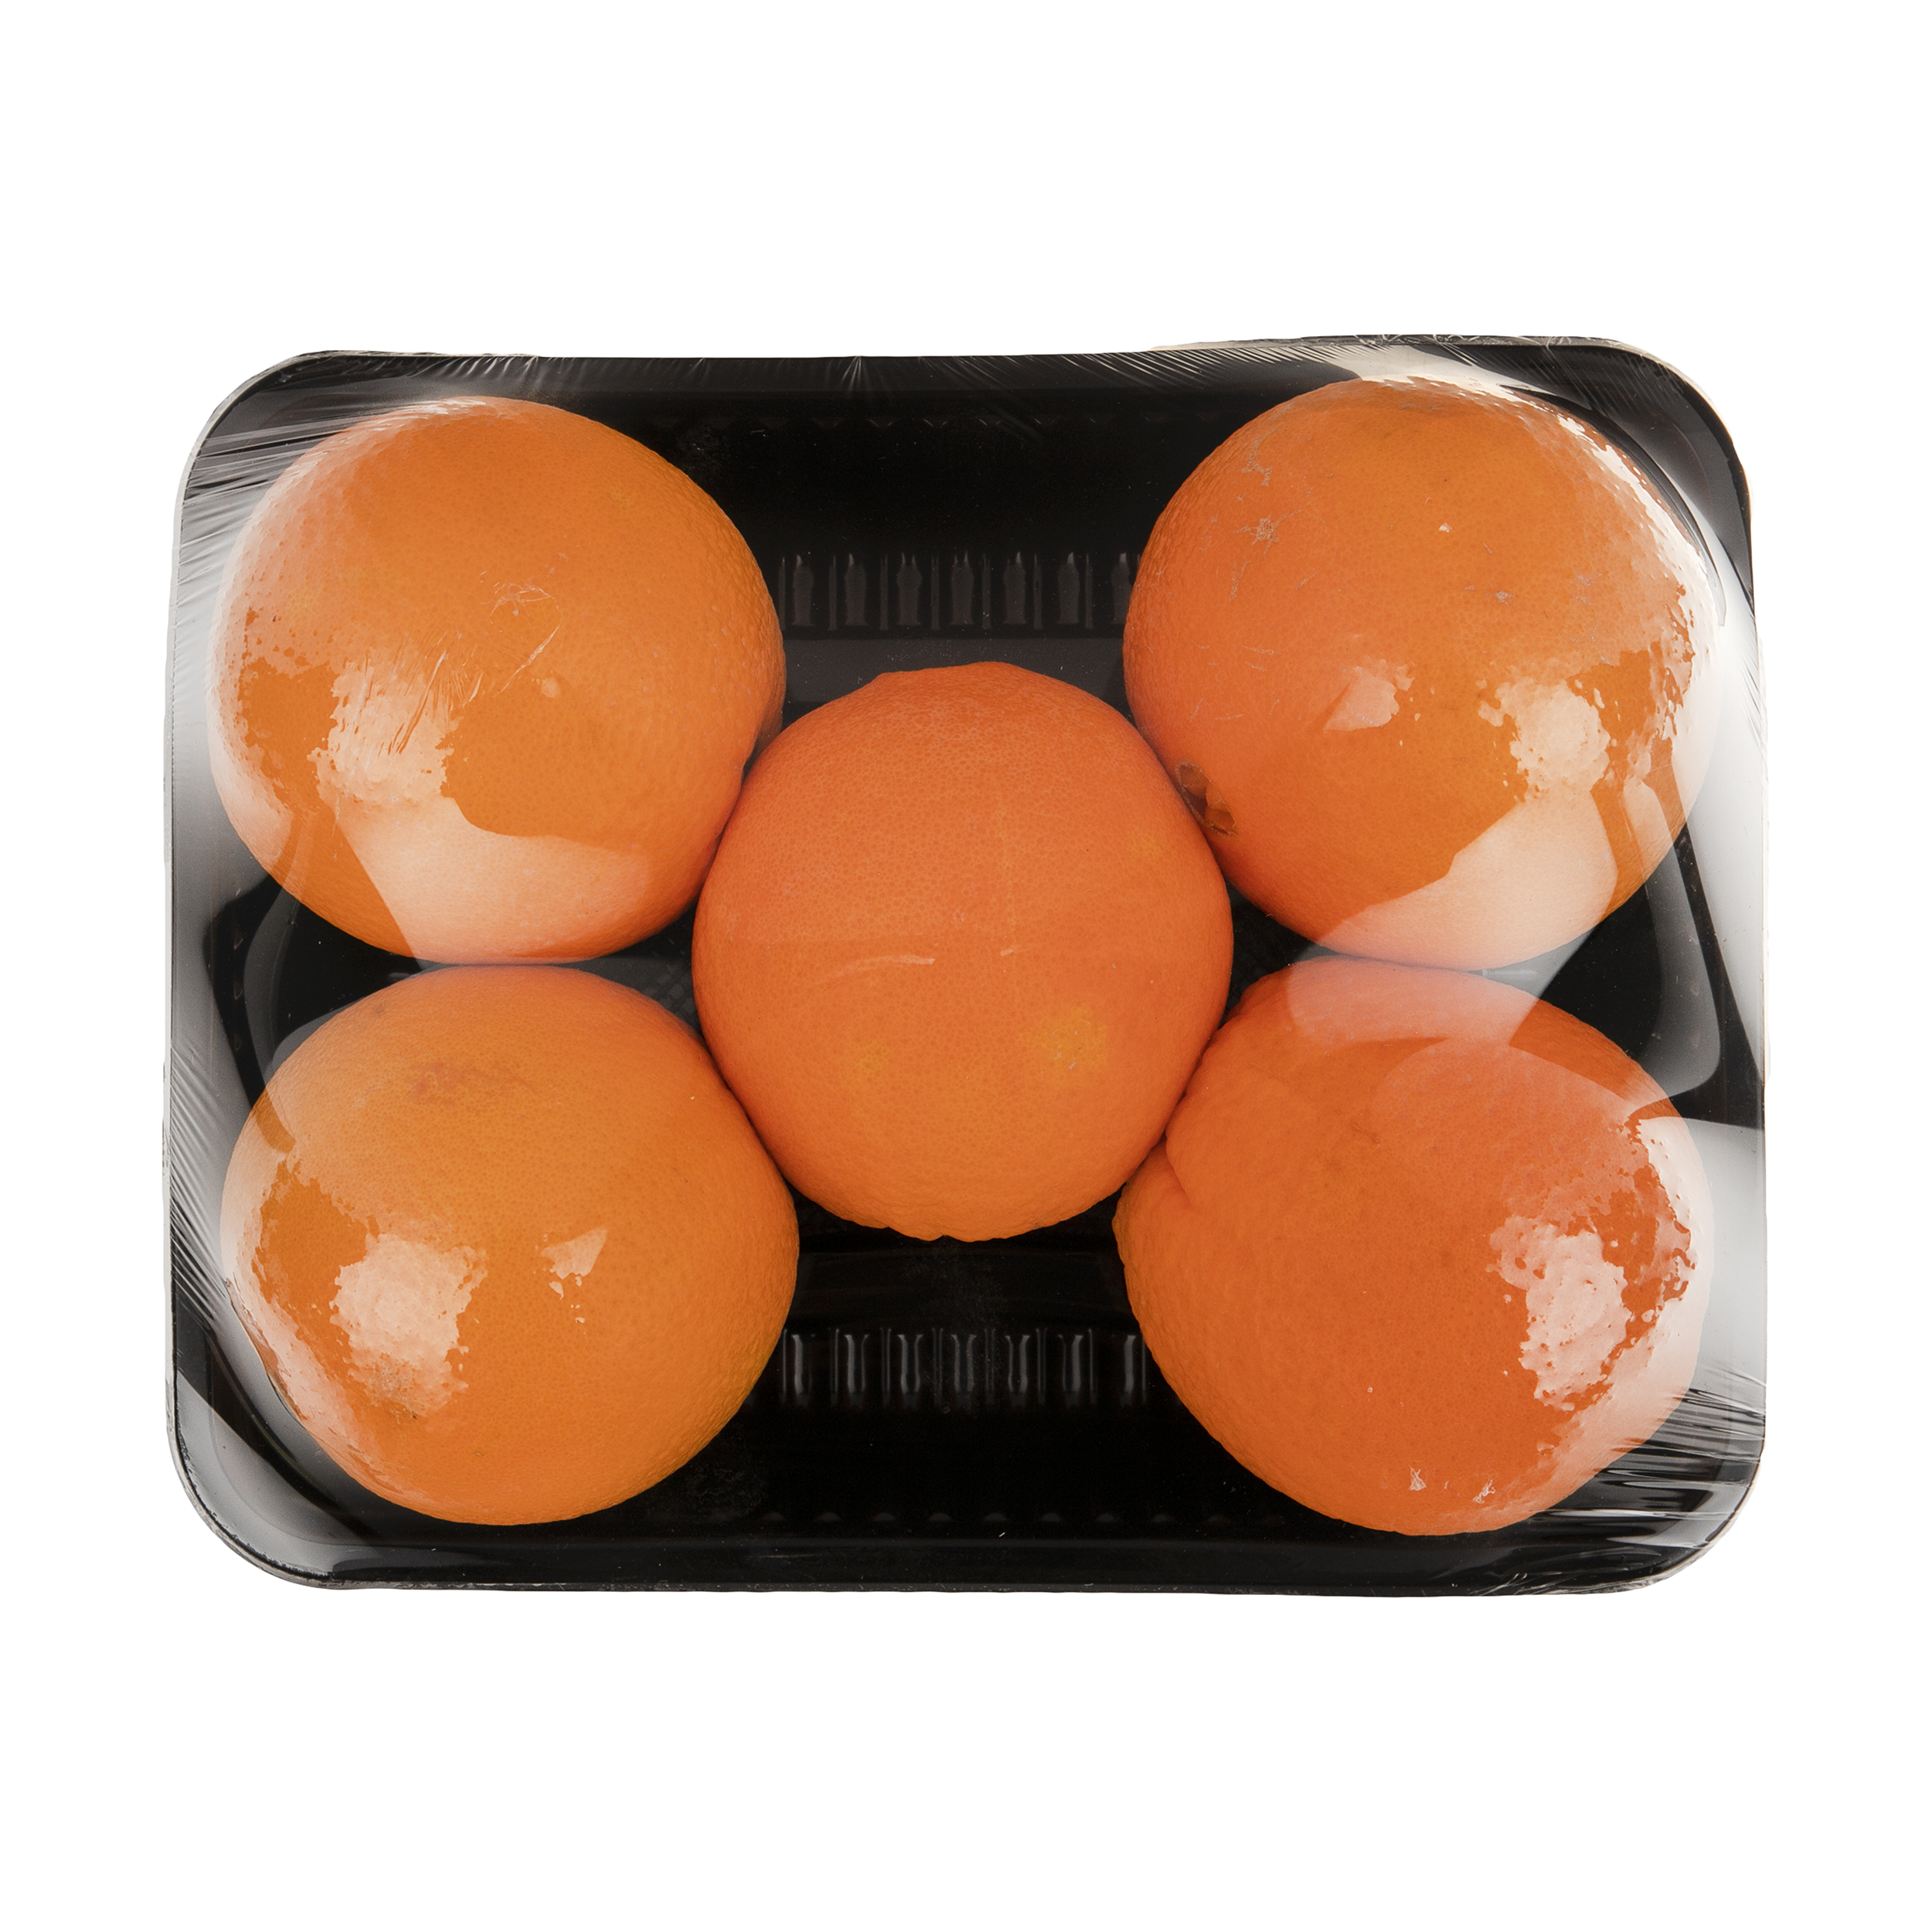 پرتقال شمال - 1 کیلوگرم